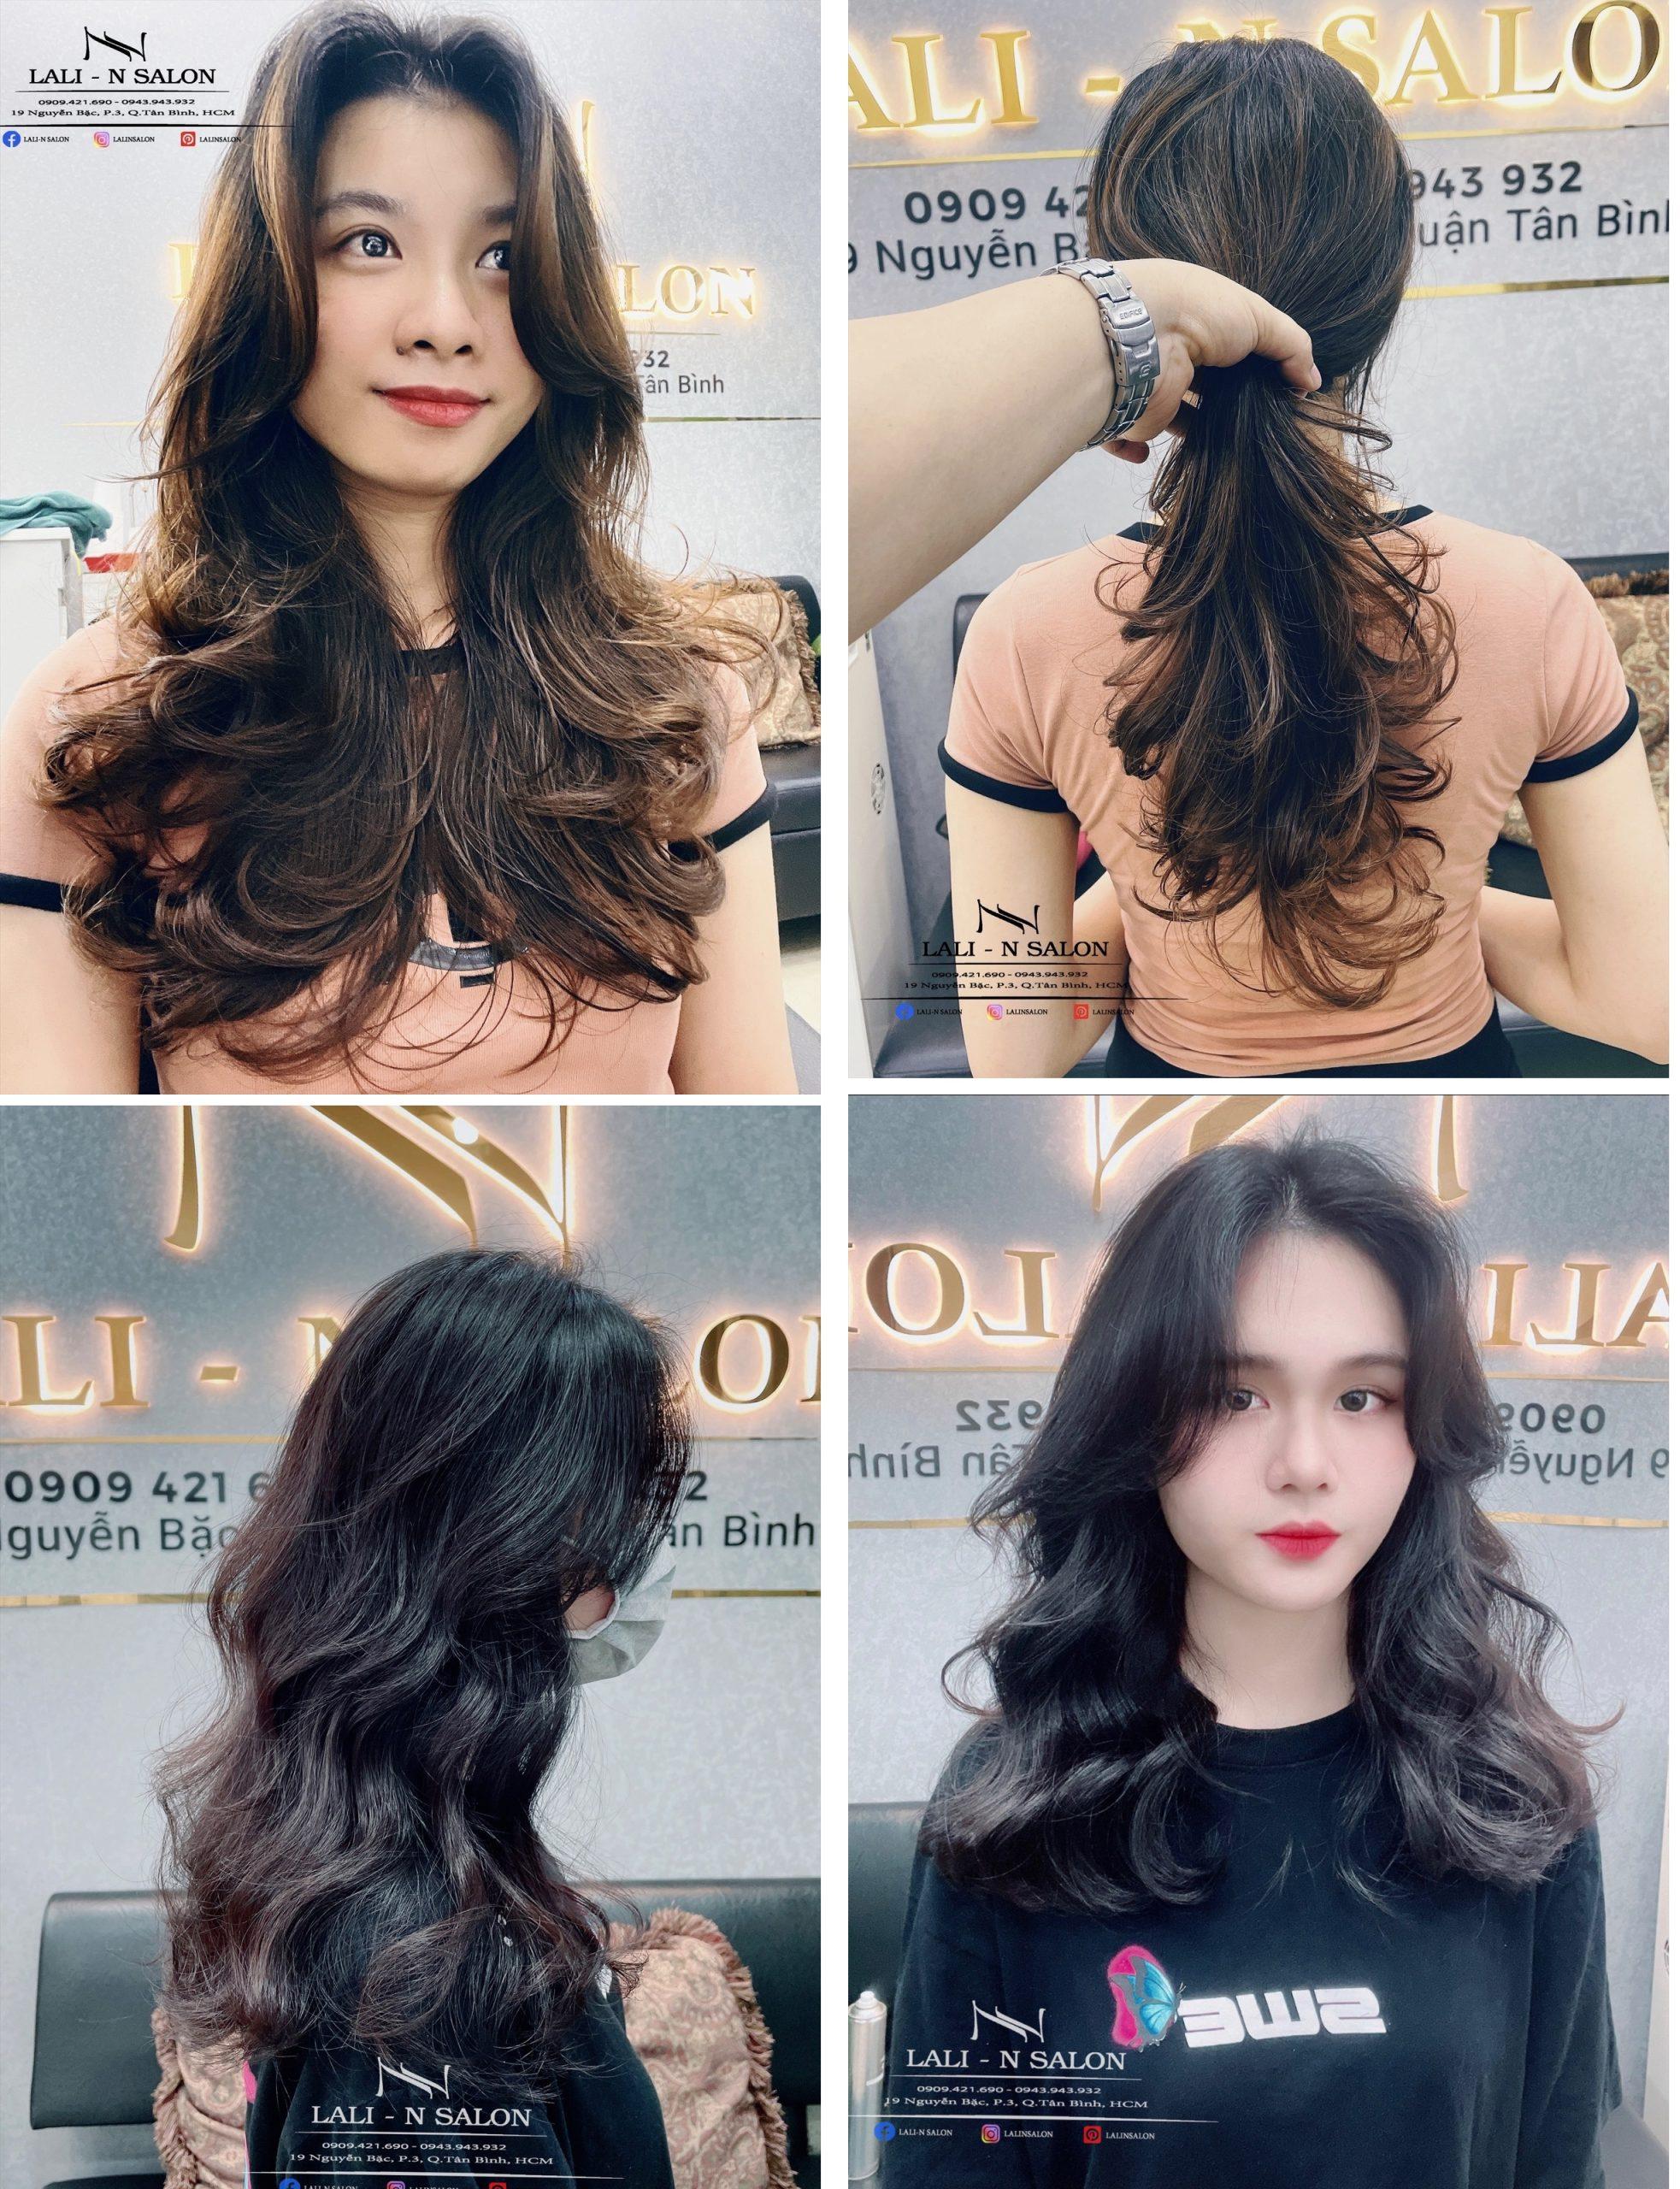 Salon uốn tóc phong cách Hàn Quốc: Bạn muốn tìm đến một salon chuyên nghiệp và có phong cách riêng để uốn tóc? Salon uốn tóc phong cách Hàn Quốc sẽ làm bạn hài lòng. Với đội ngũ chuyên viên tay nghề cao và phương pháp uốn tóc hiện đại, bạn sẽ có kiểu tóc đẹp và đầy cá tính.